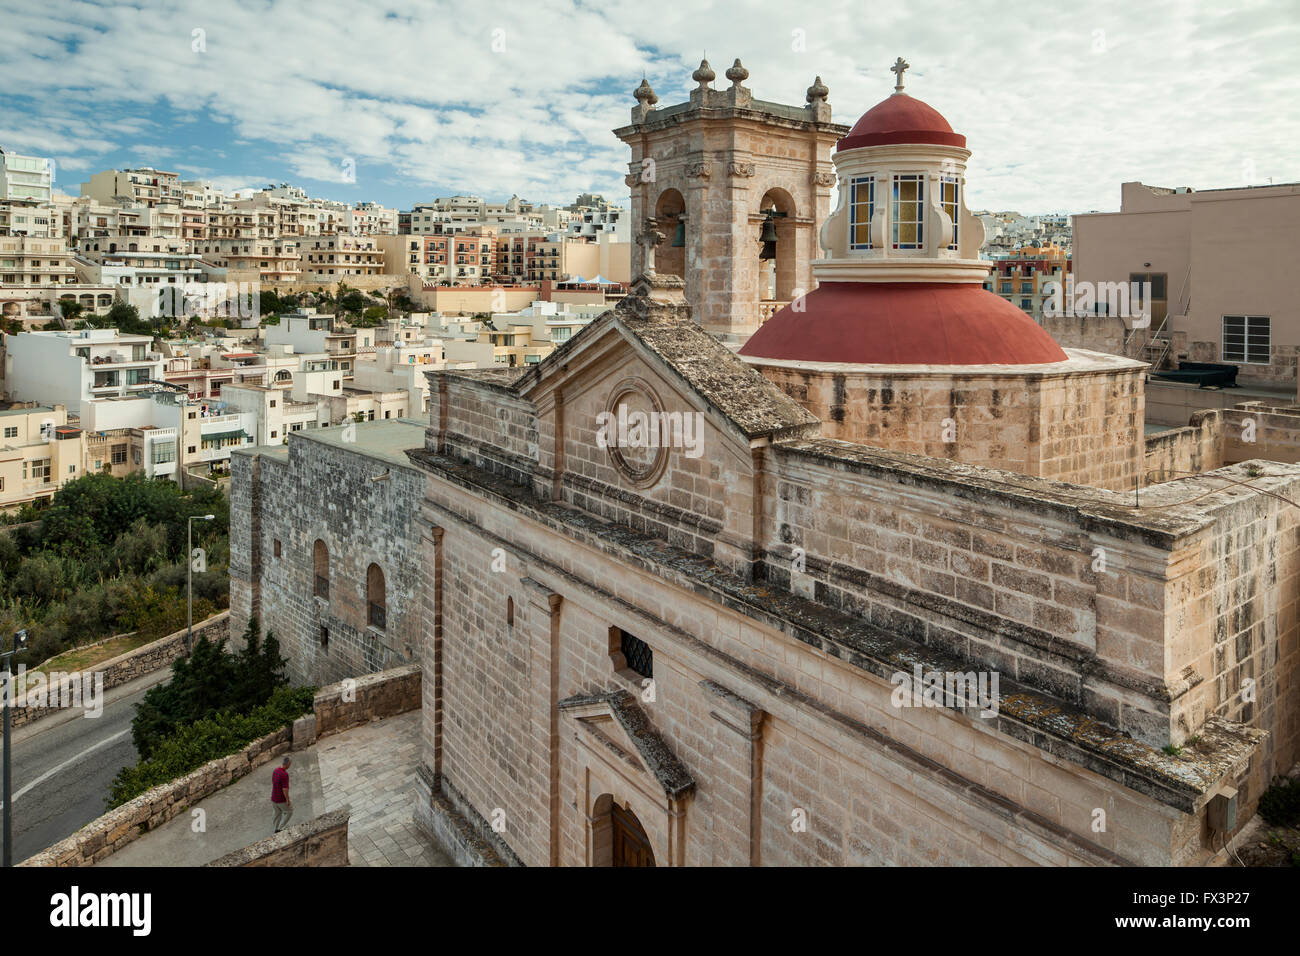 Santuario de Nuestra Señora de Mellieha, Melieha, Malta. Foto de stock